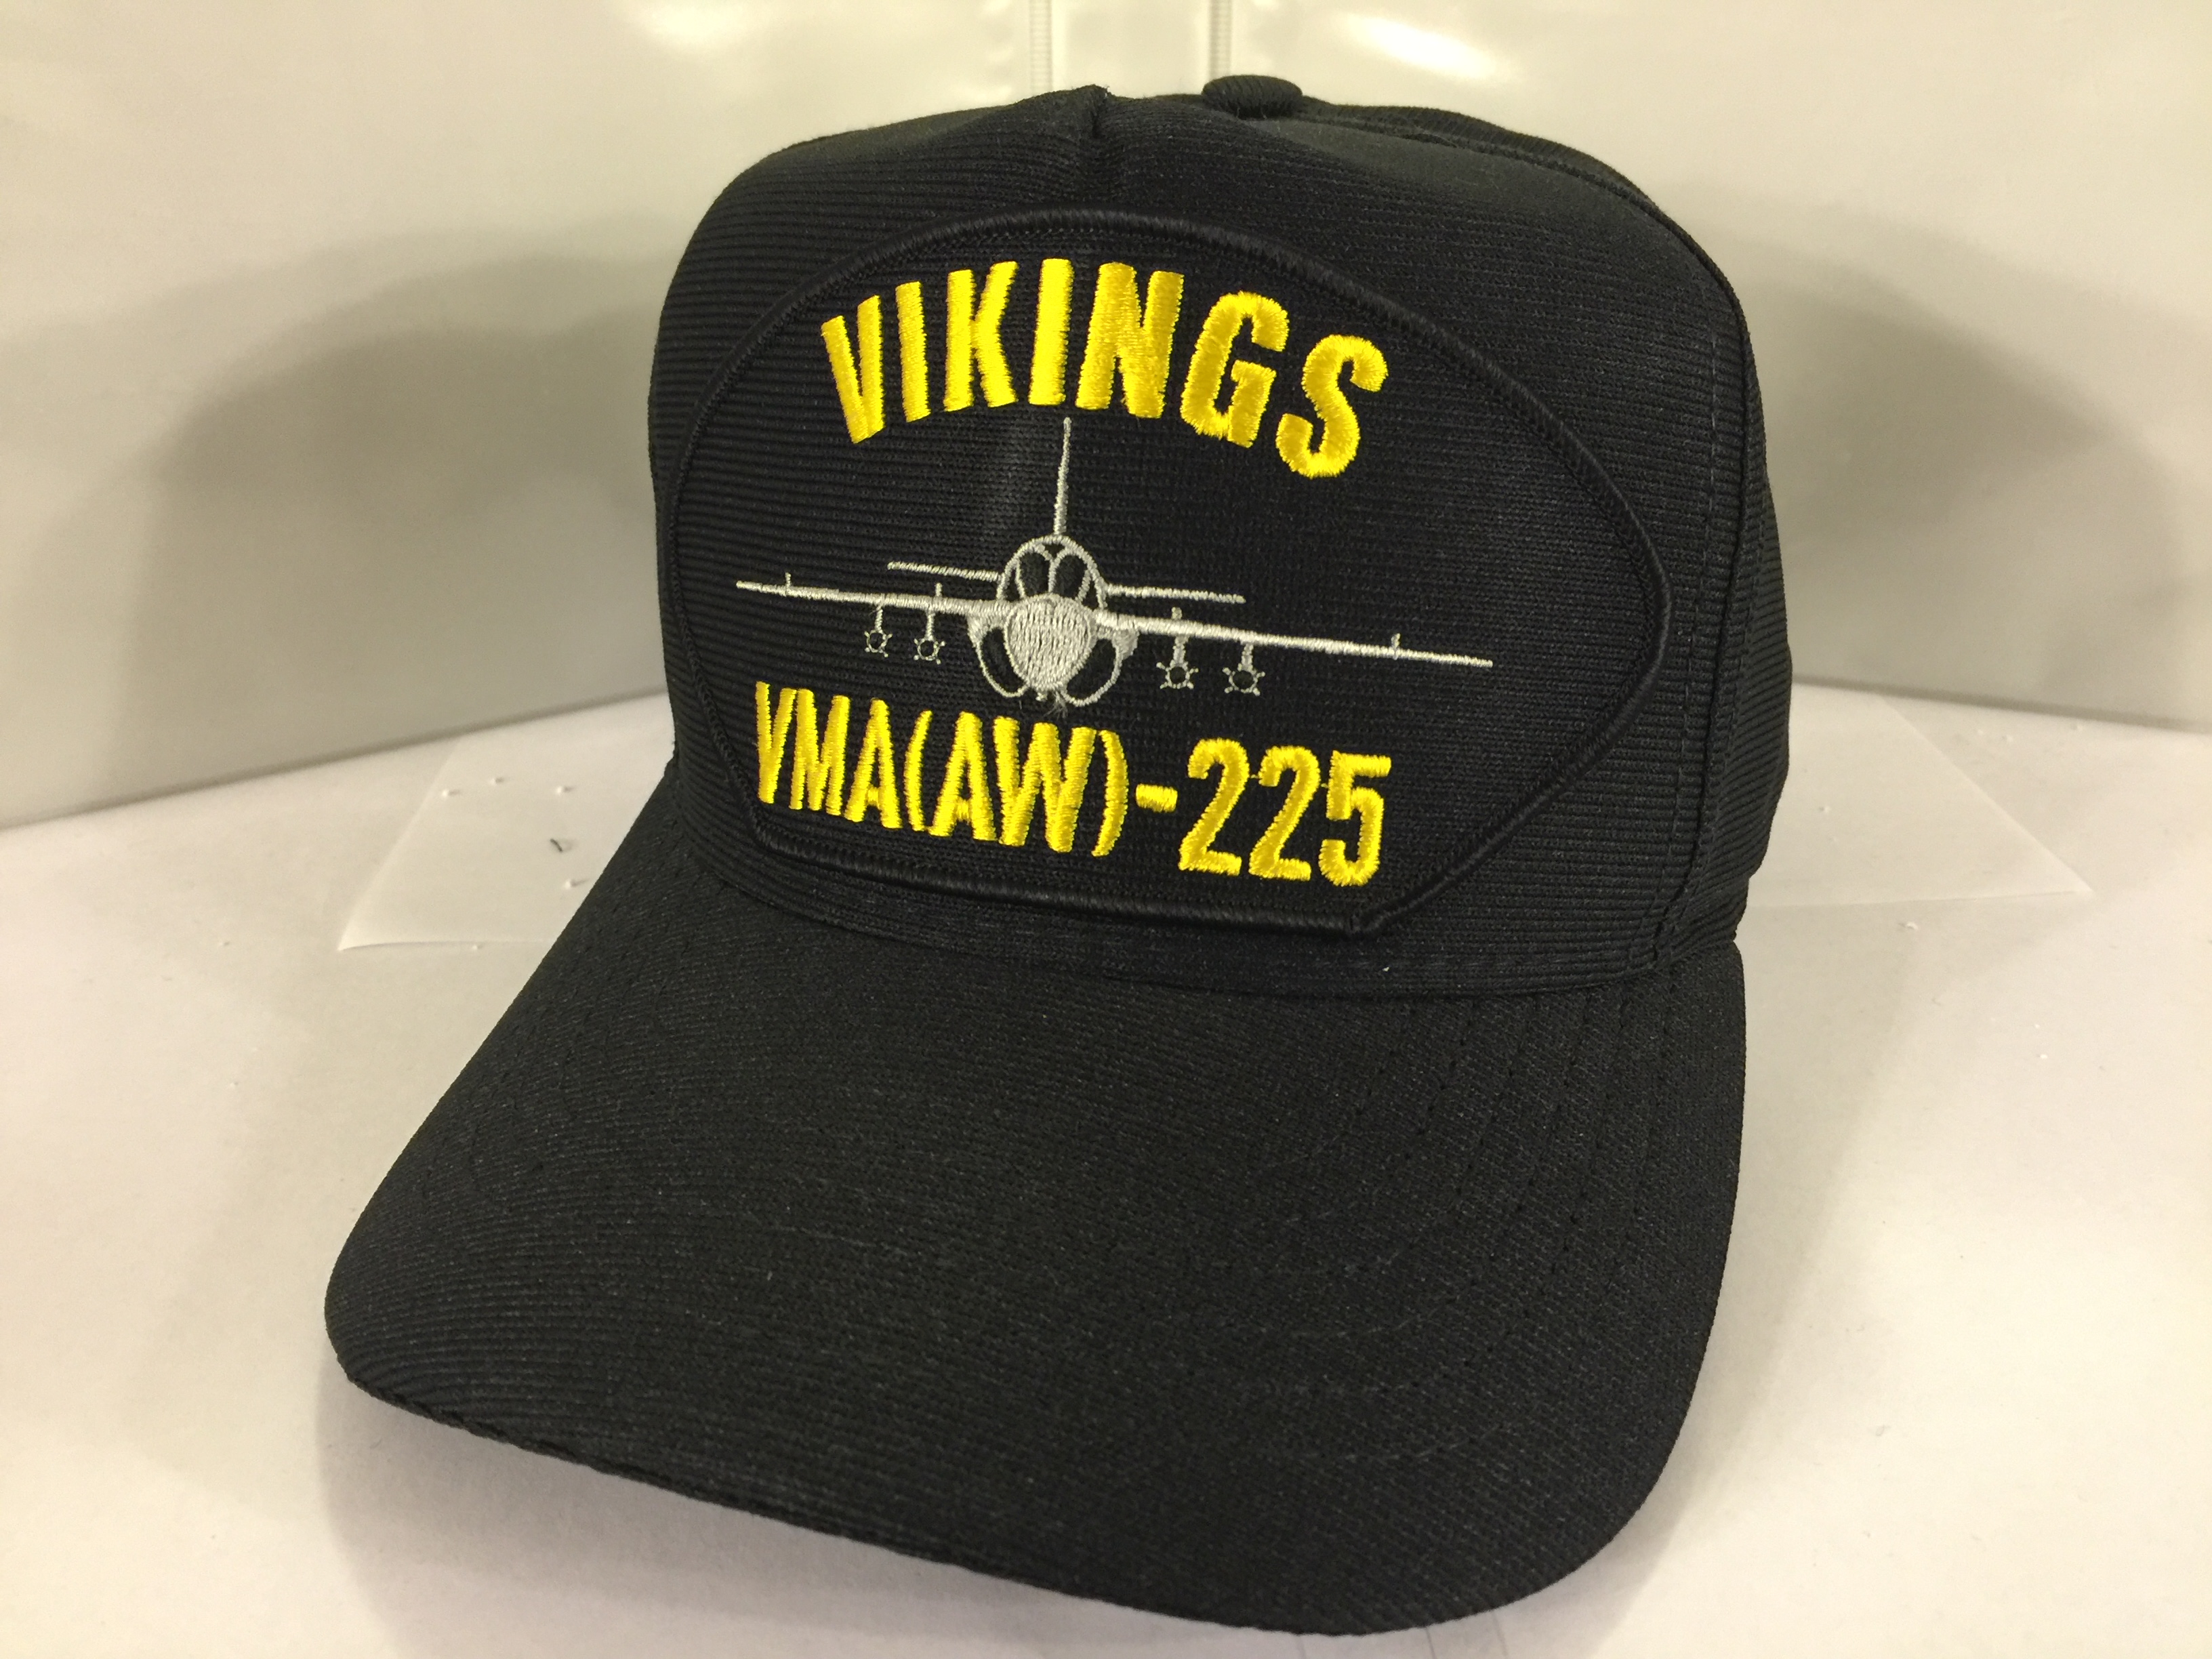 USMC VMA(AW)-225 VIKINGS Ballcap (Black)